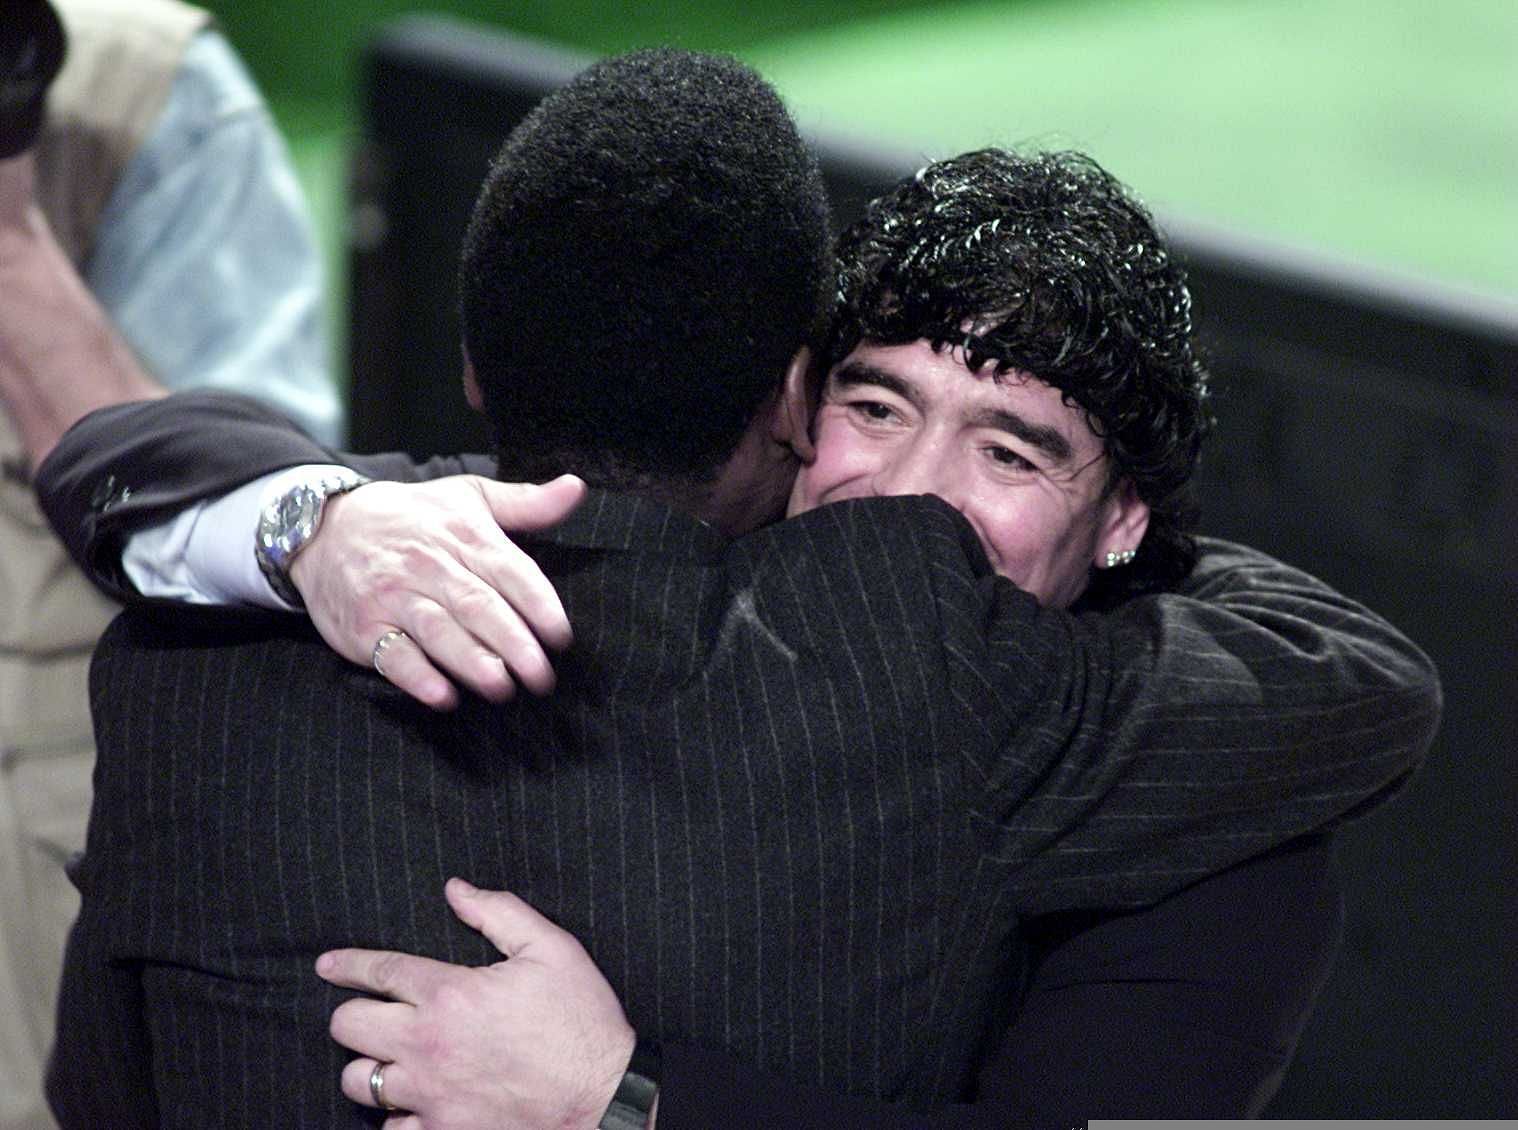 Pele and Diego Maradona at the FIFA Awards